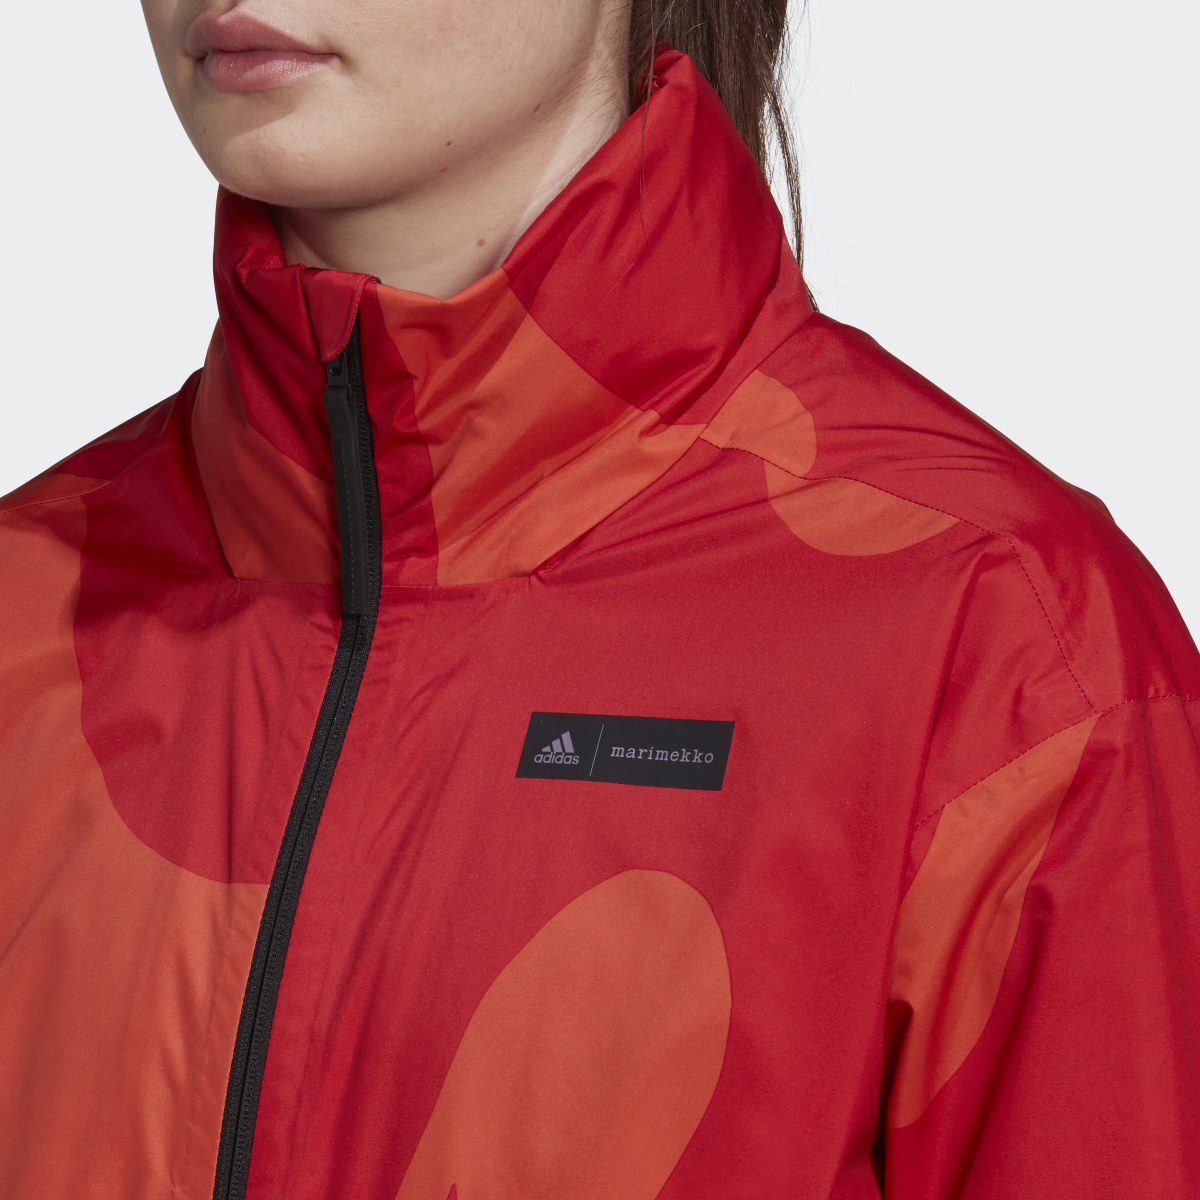 Adidas Marimekko Traveer RAIN.RDY Jacket. 10